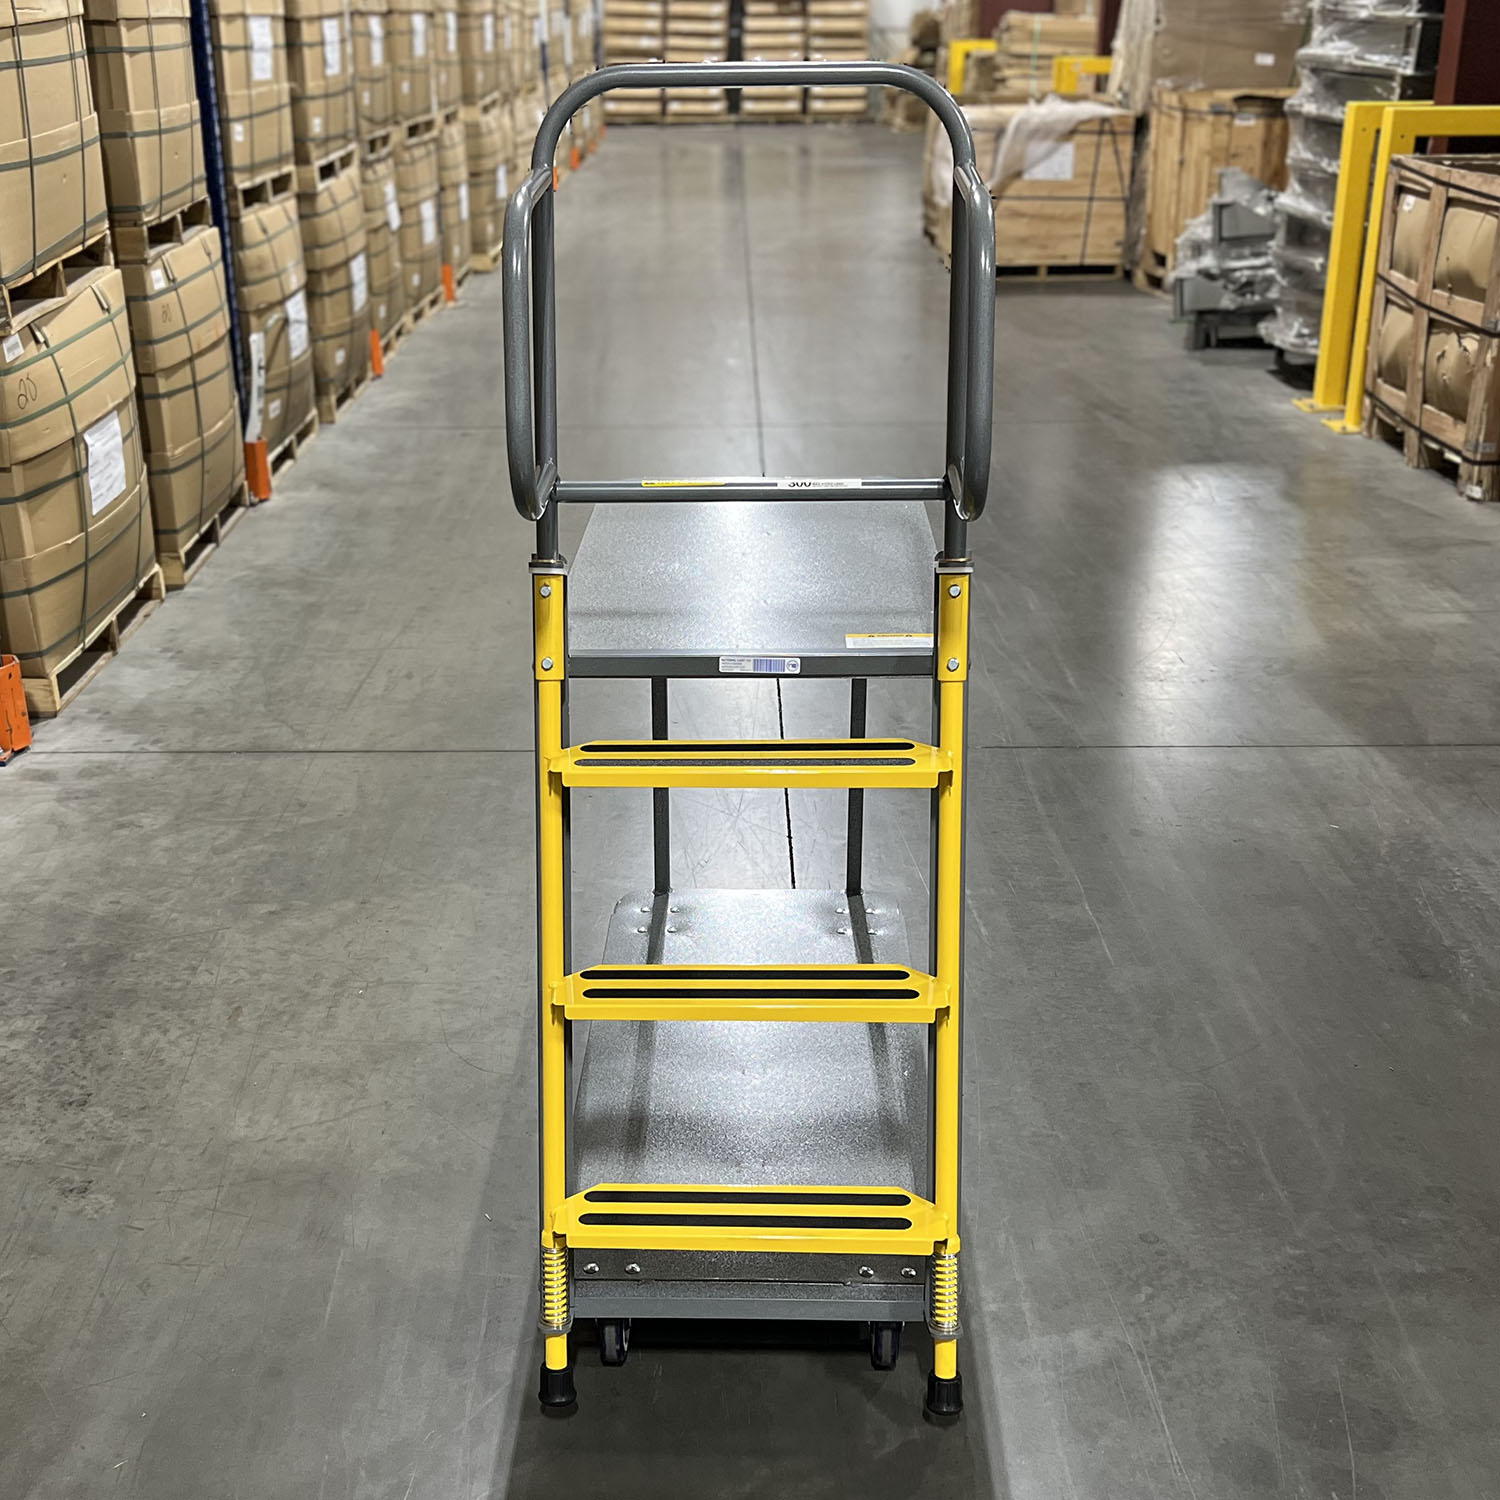 2 Shelf ladder cart, ladder picking cart industrial cart picking cart material handling distribution cart fulfillment cart